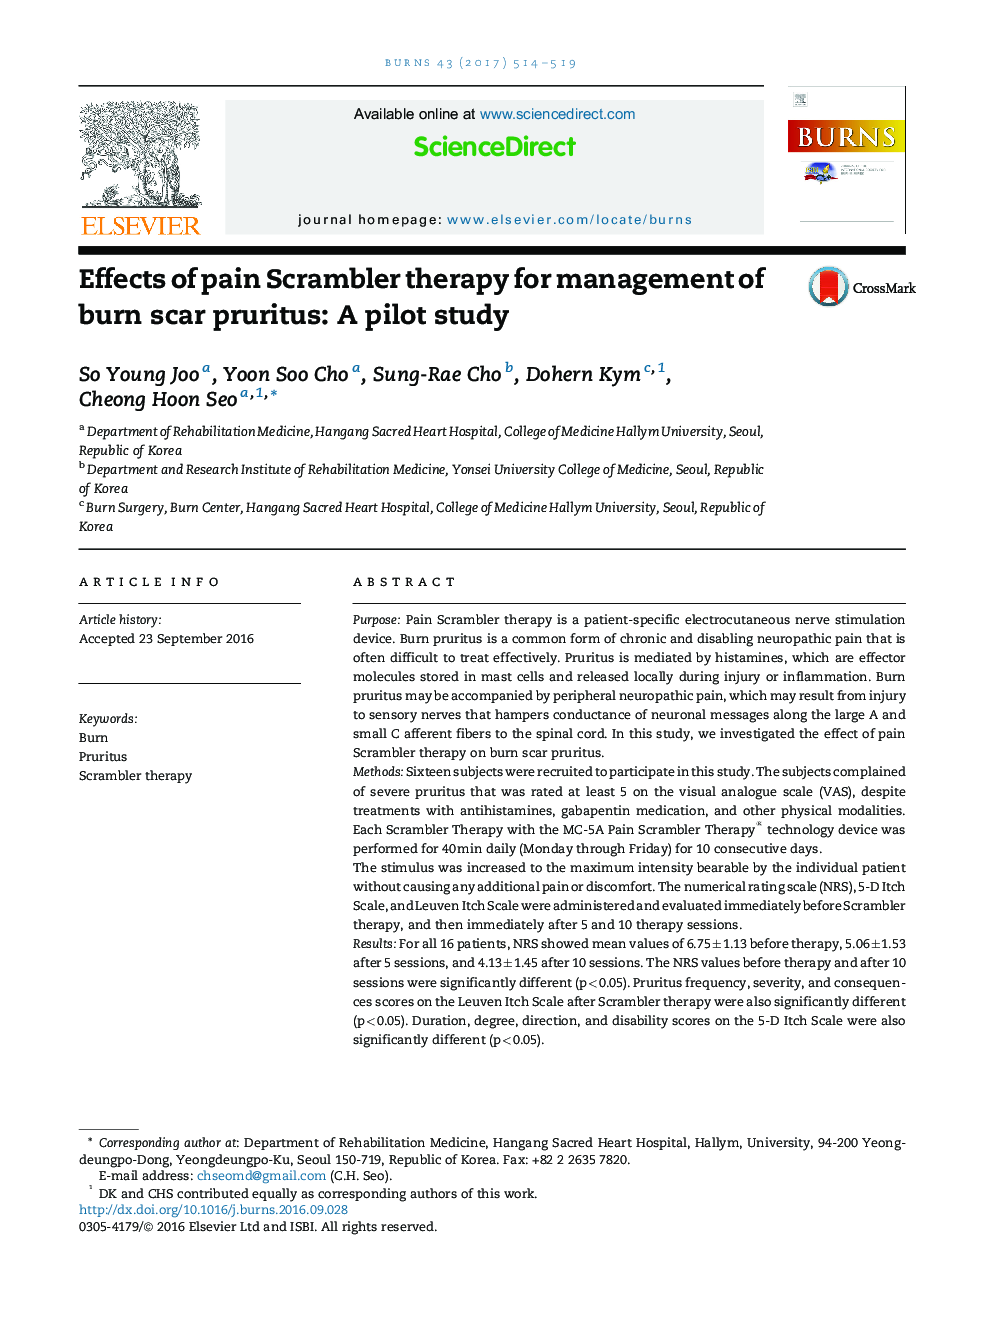 اثرات درد کوشا درمانی برای مدیریت خارش های زخم سوختگی: یک مطالعه آزمایشی